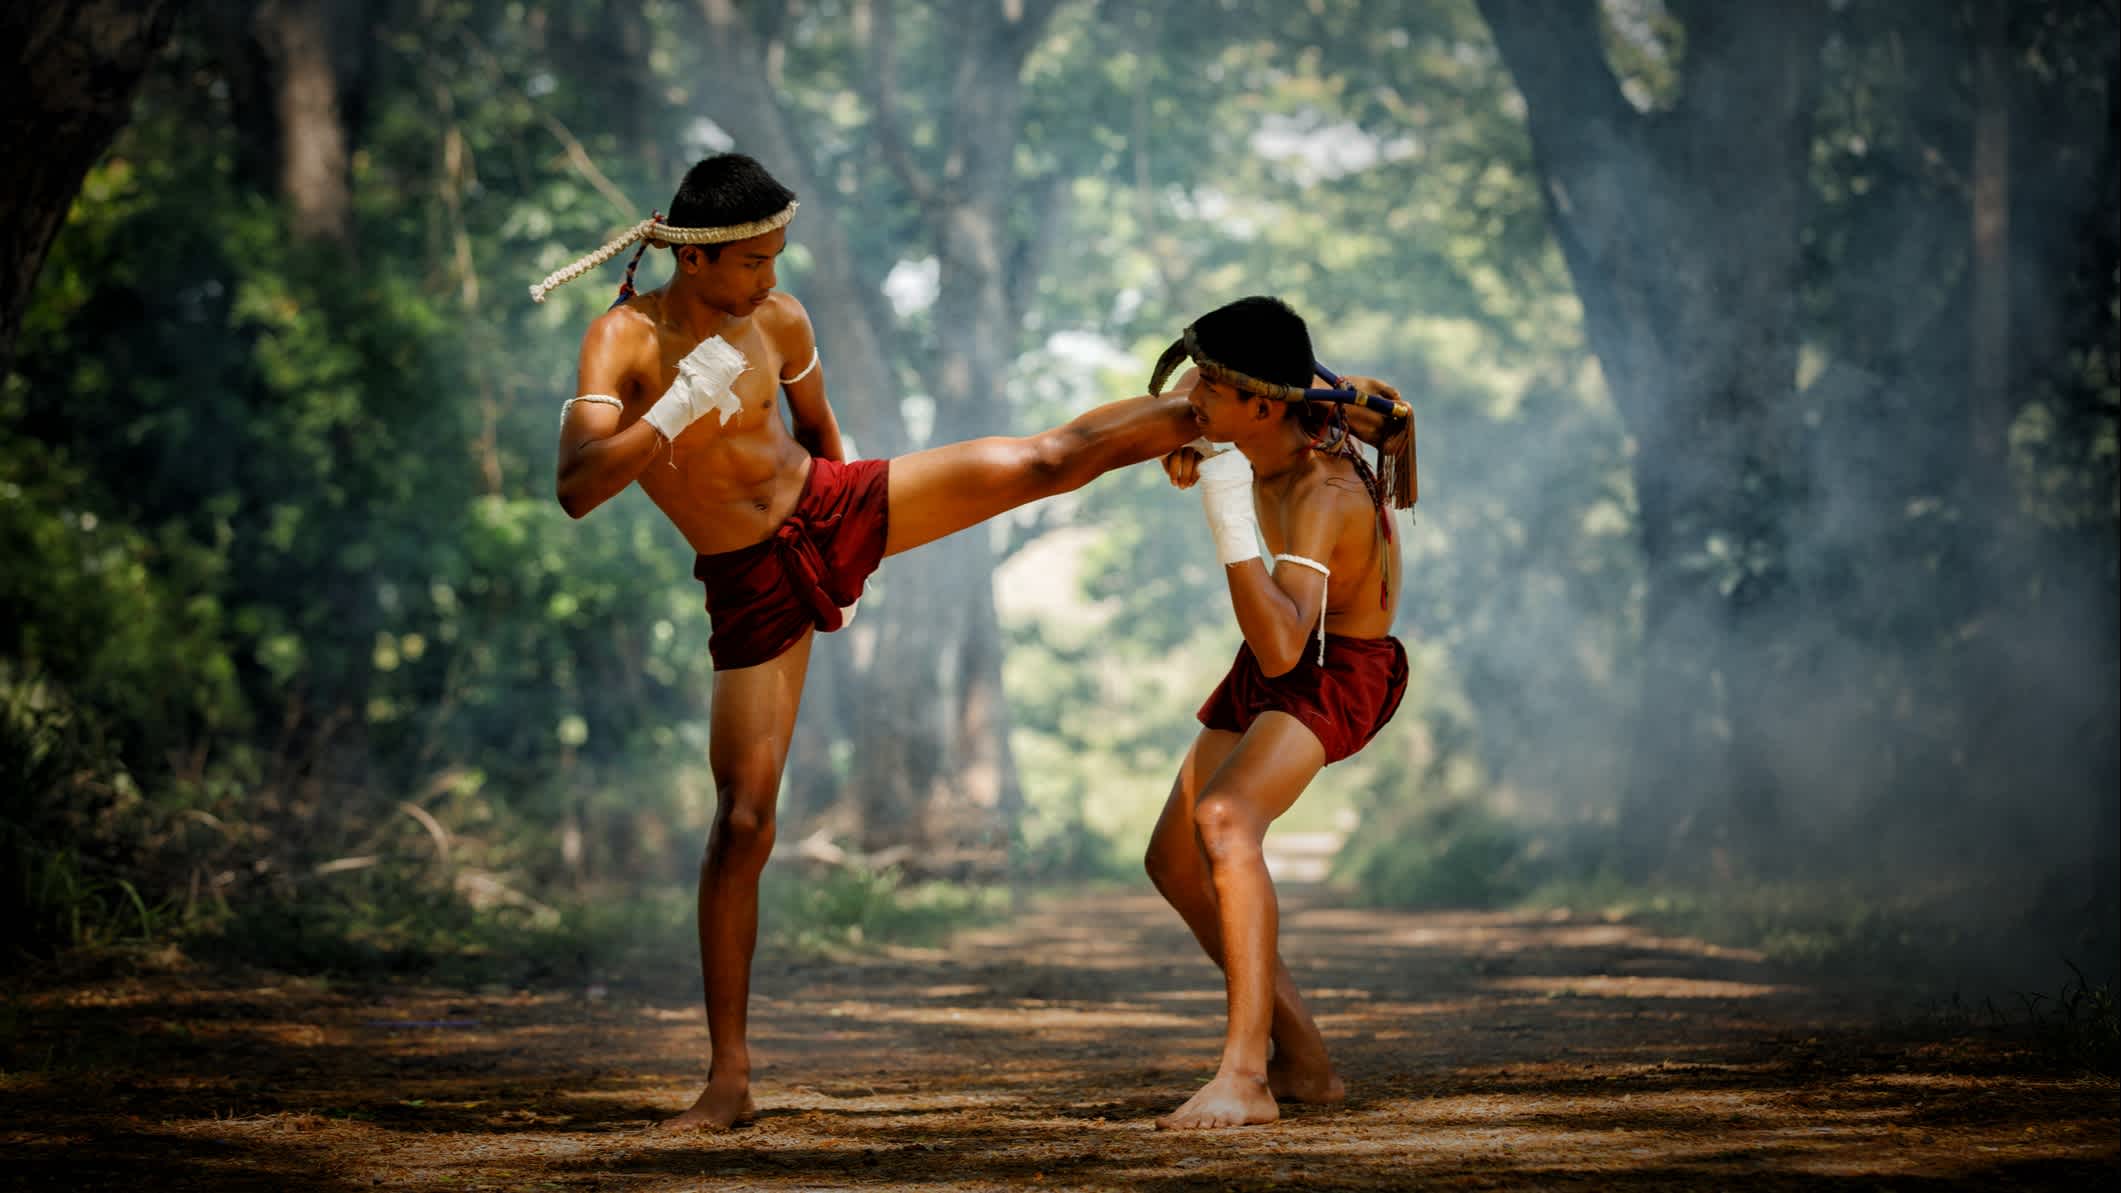 Deux combattants de Muay-thaï ou boxe thaïlandaise en Thaïlande